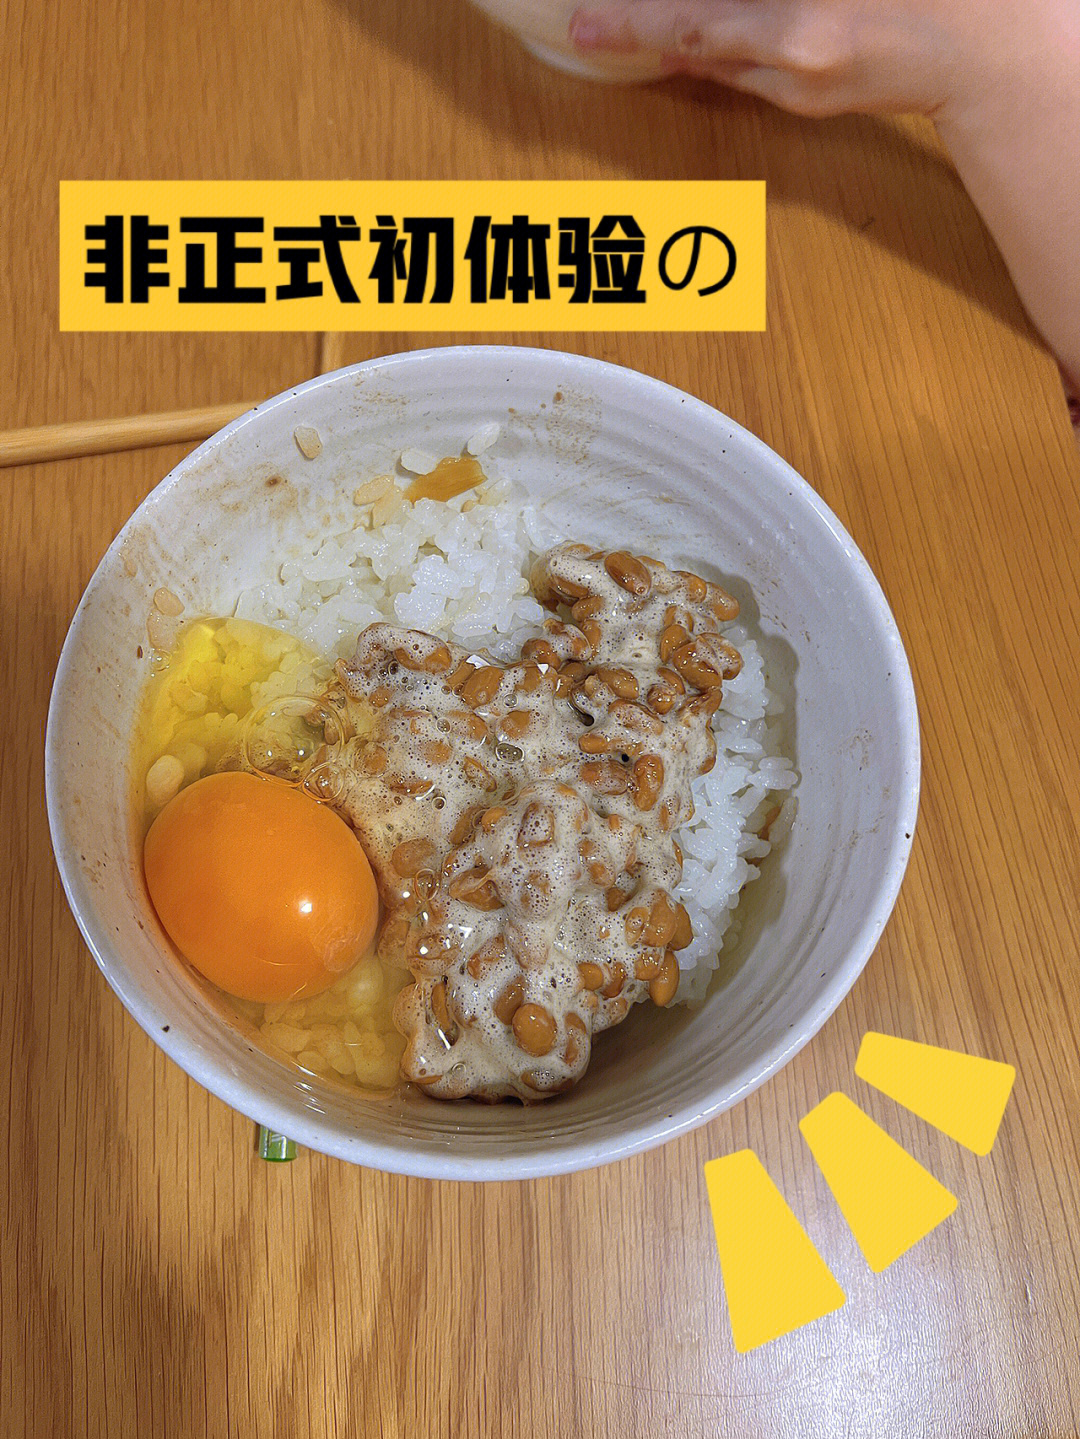 纳豆鸡蛋拌饭半碗米下肚,突然想体验一下纳豆无菌蛋开整!